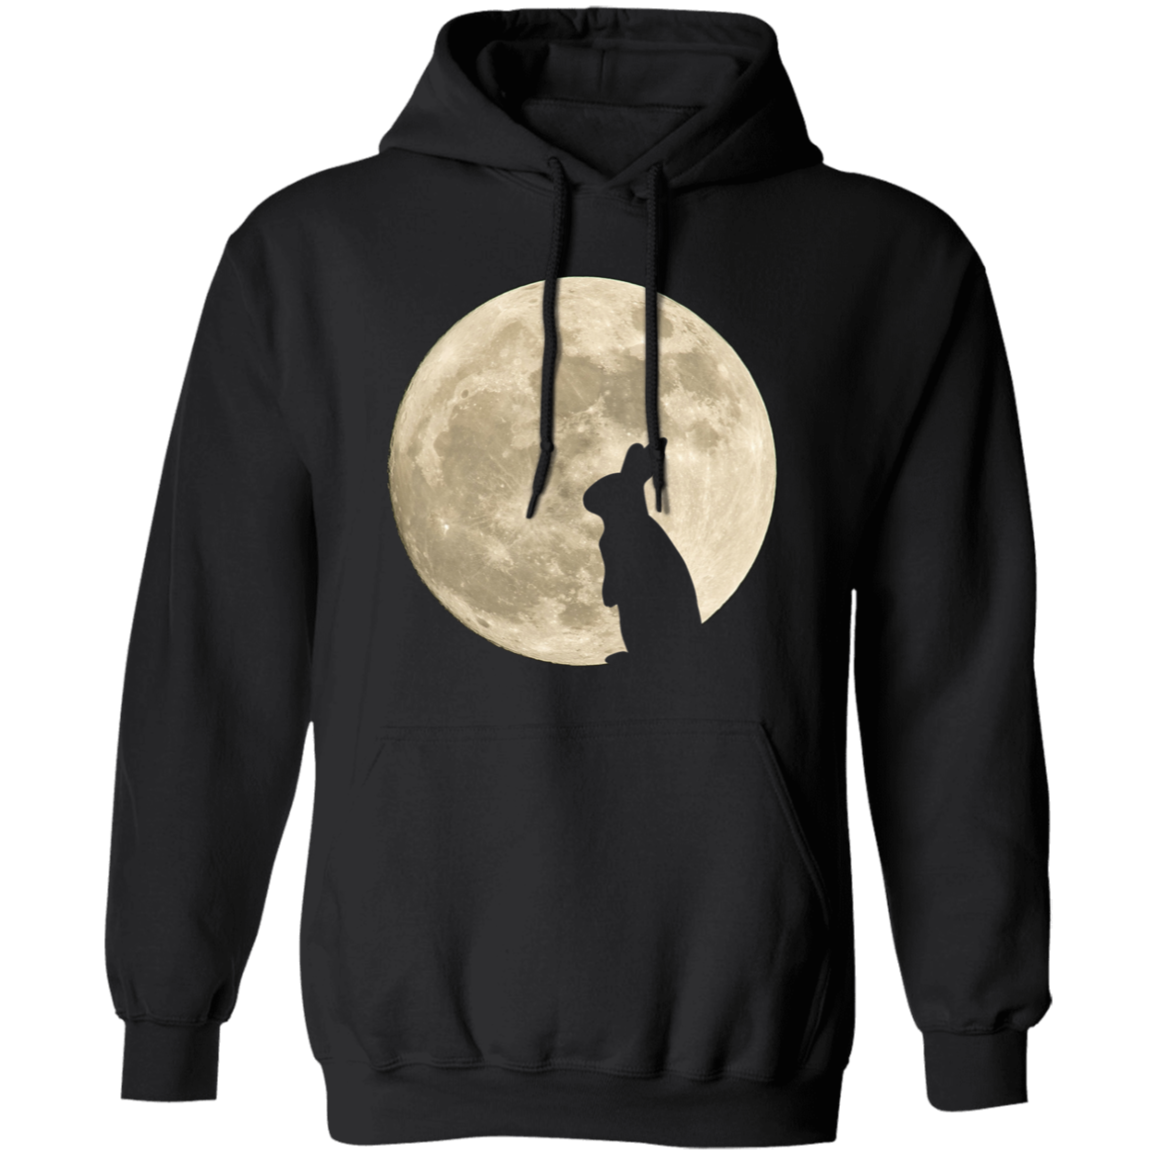 Bunny Moon 2 - T-shirts, Hoodies and Sweatshirts